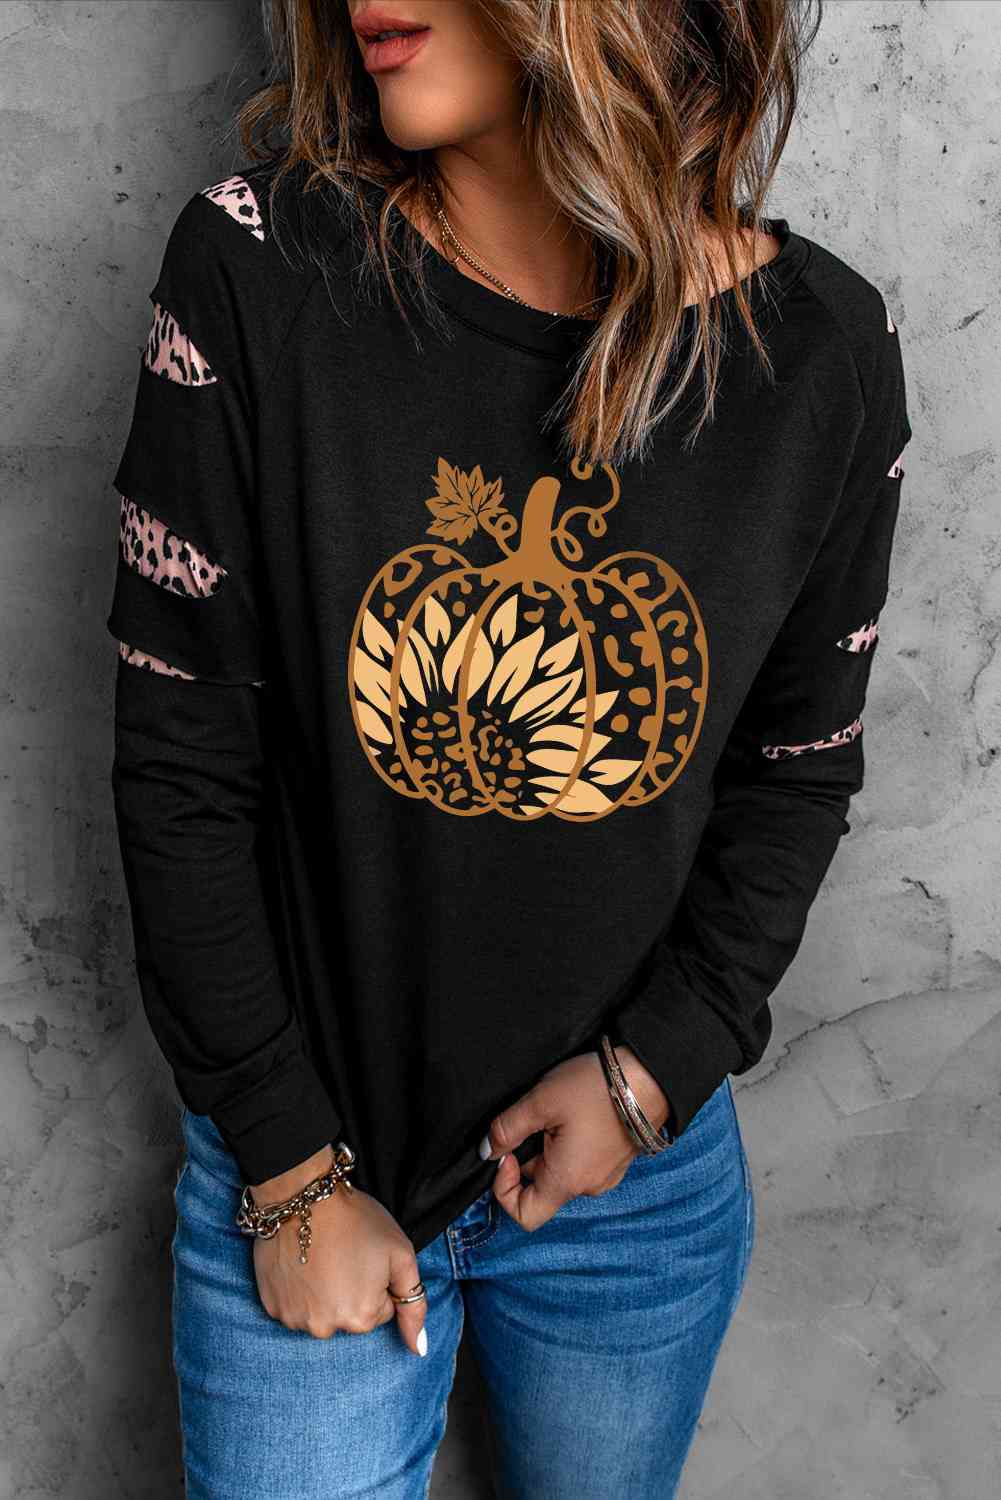 Leopard Pumpkin Graphic Sweatshirt - Guy Christopher